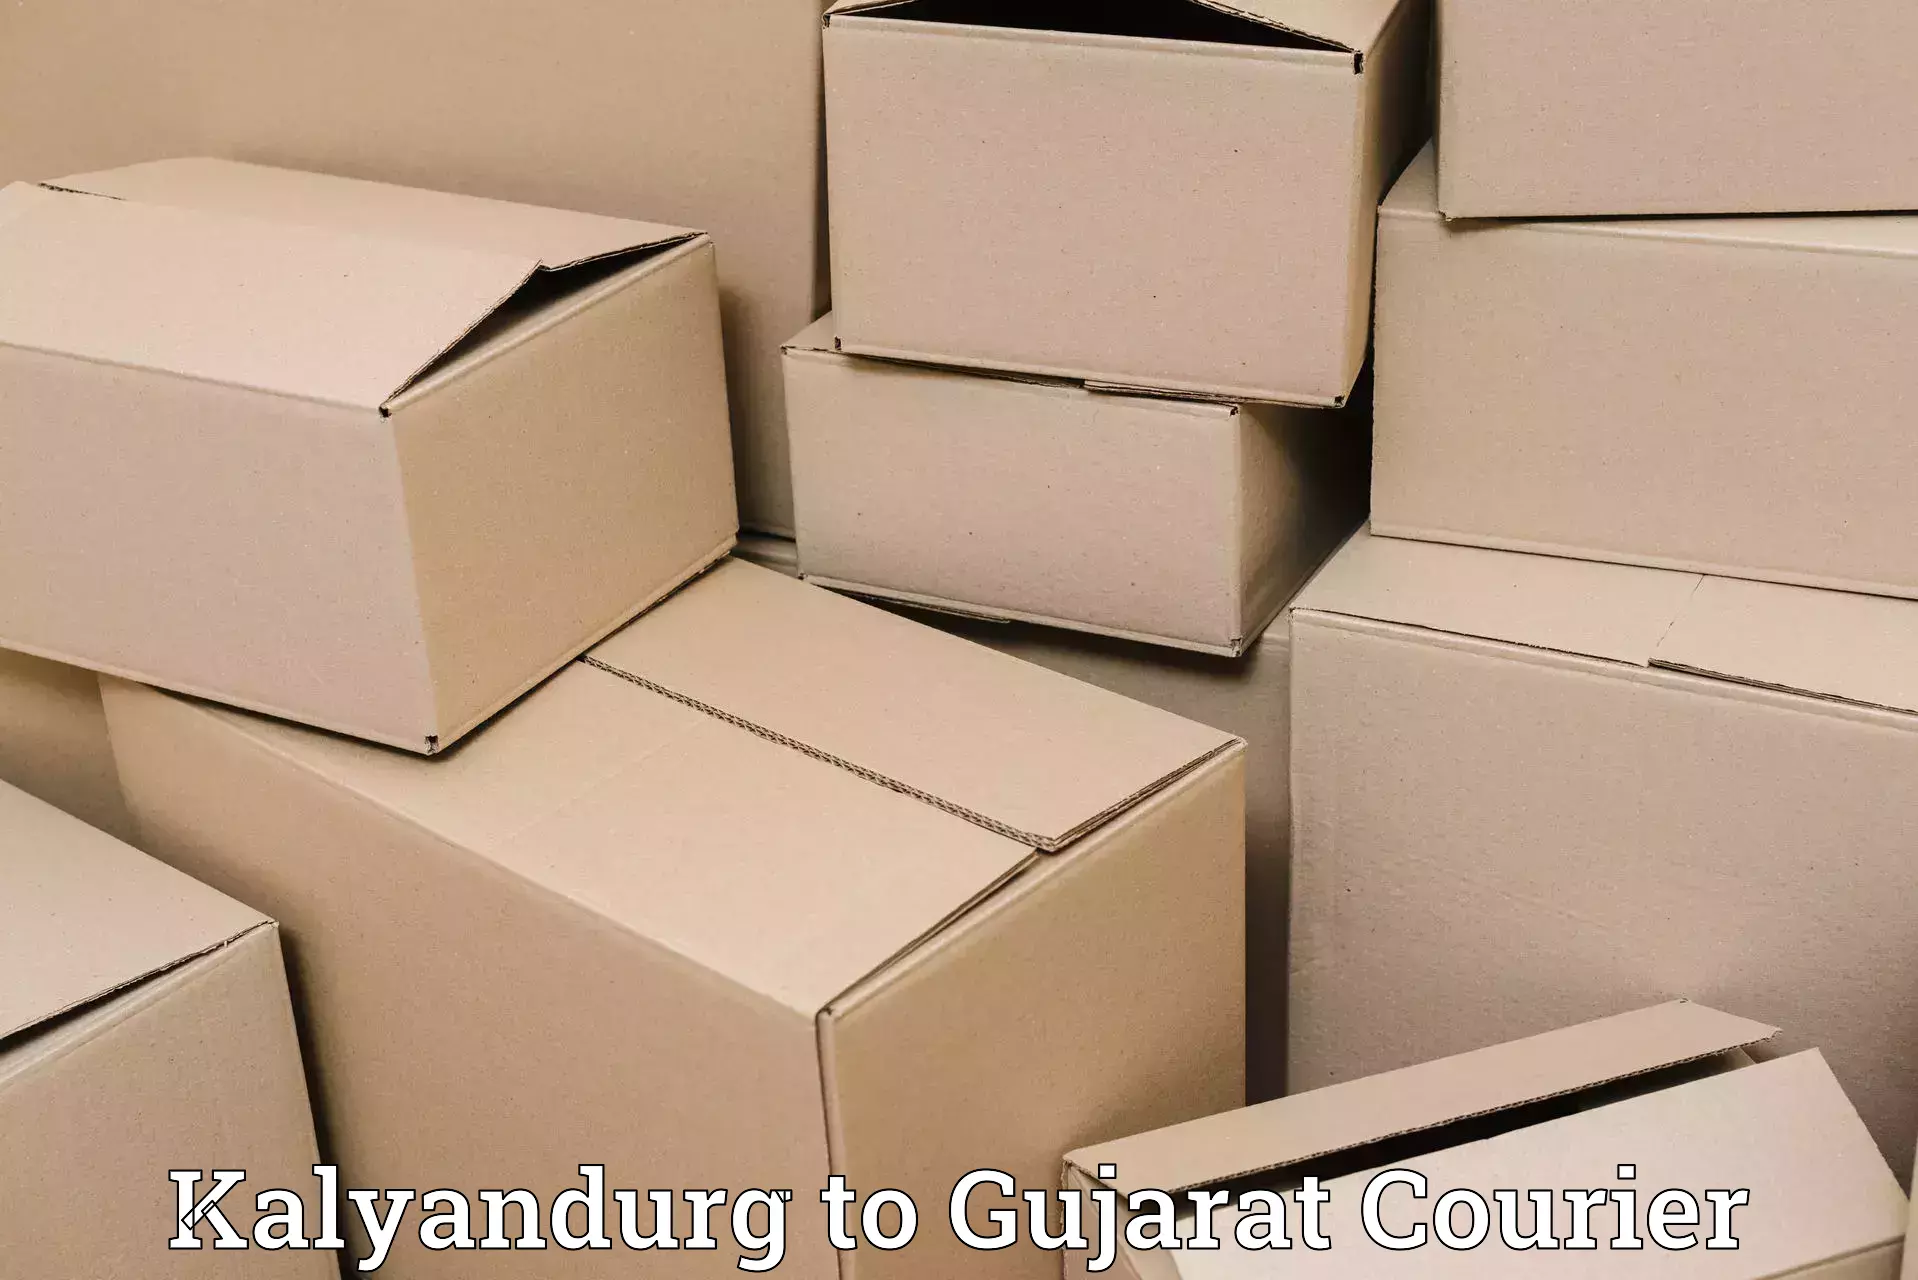 Customized shipping options in Kalyandurg to IIT Gandhi Nagar